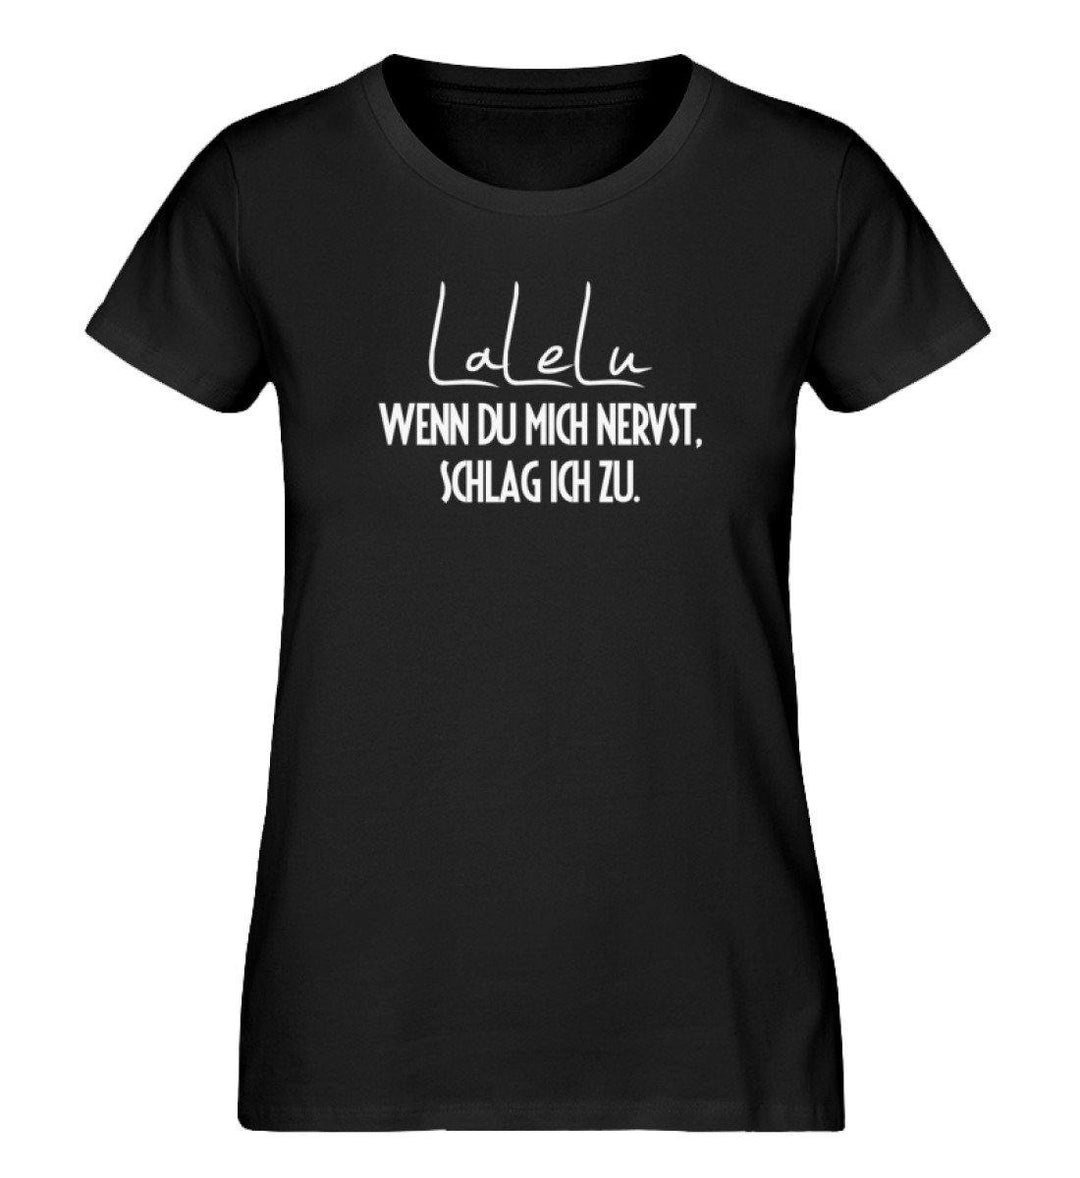 LaLeLu - Schlag ich zu - PR  - Damen Premium Organic Shirt - Words on Shirts Sag es mit dem Mittelfinger Shirts Hoodies Sweatshirt Taschen Gymsack Spruch Sprüche Statement